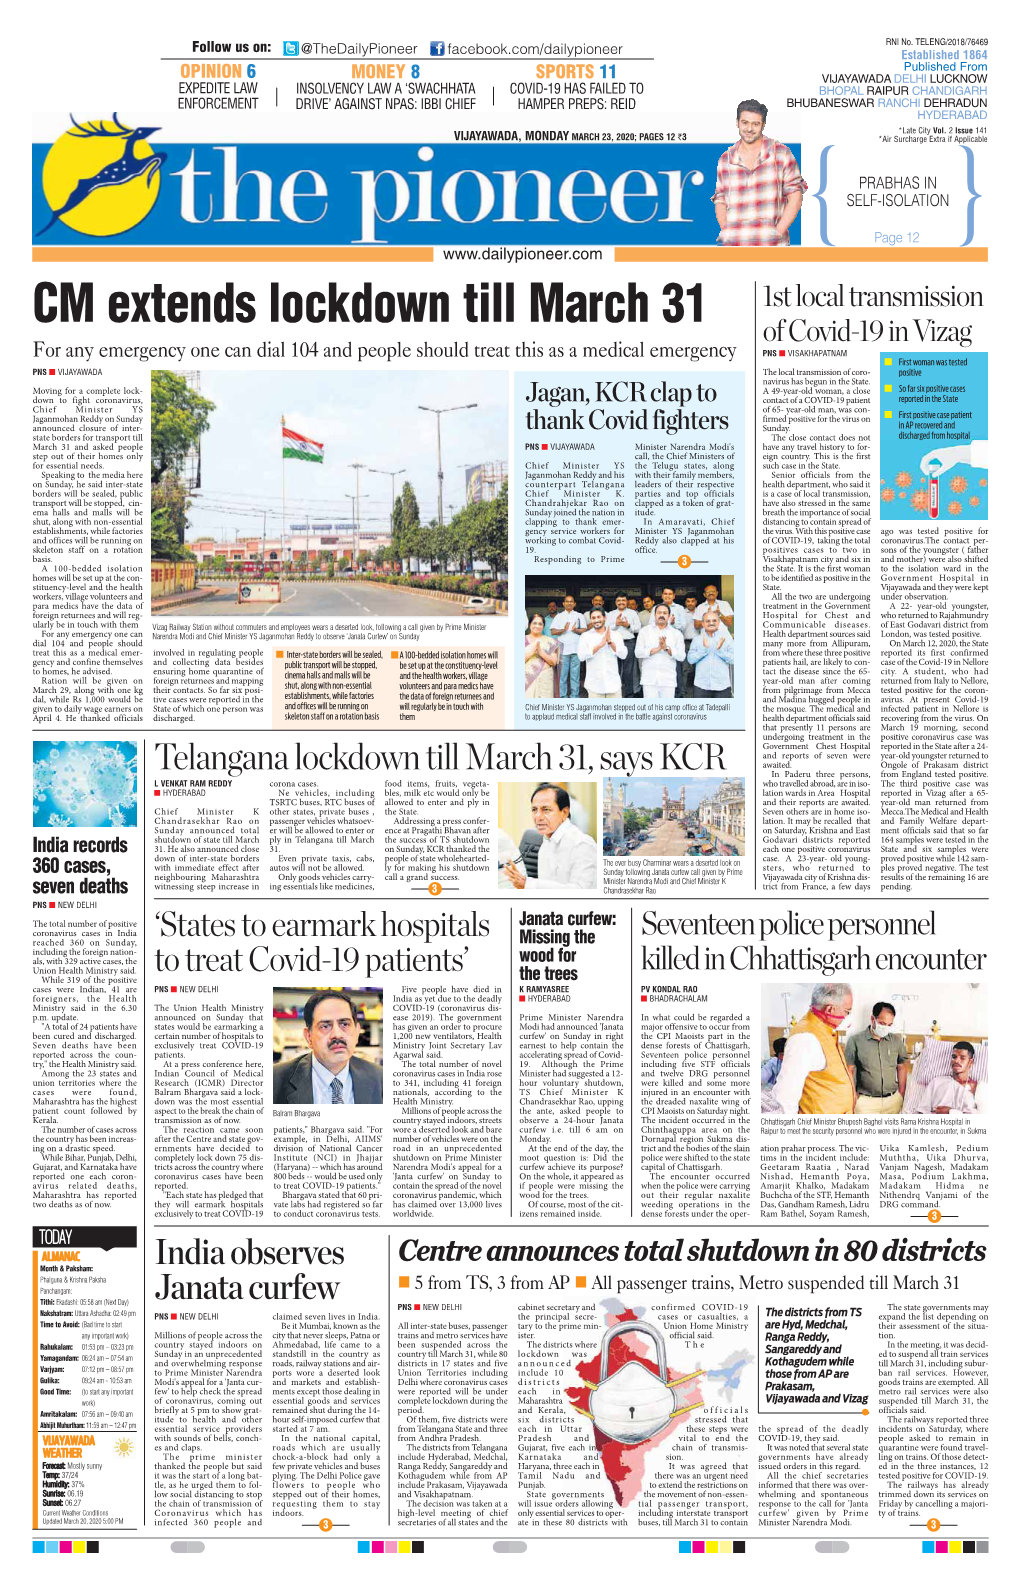 CM Extends Lockdown Till March 31